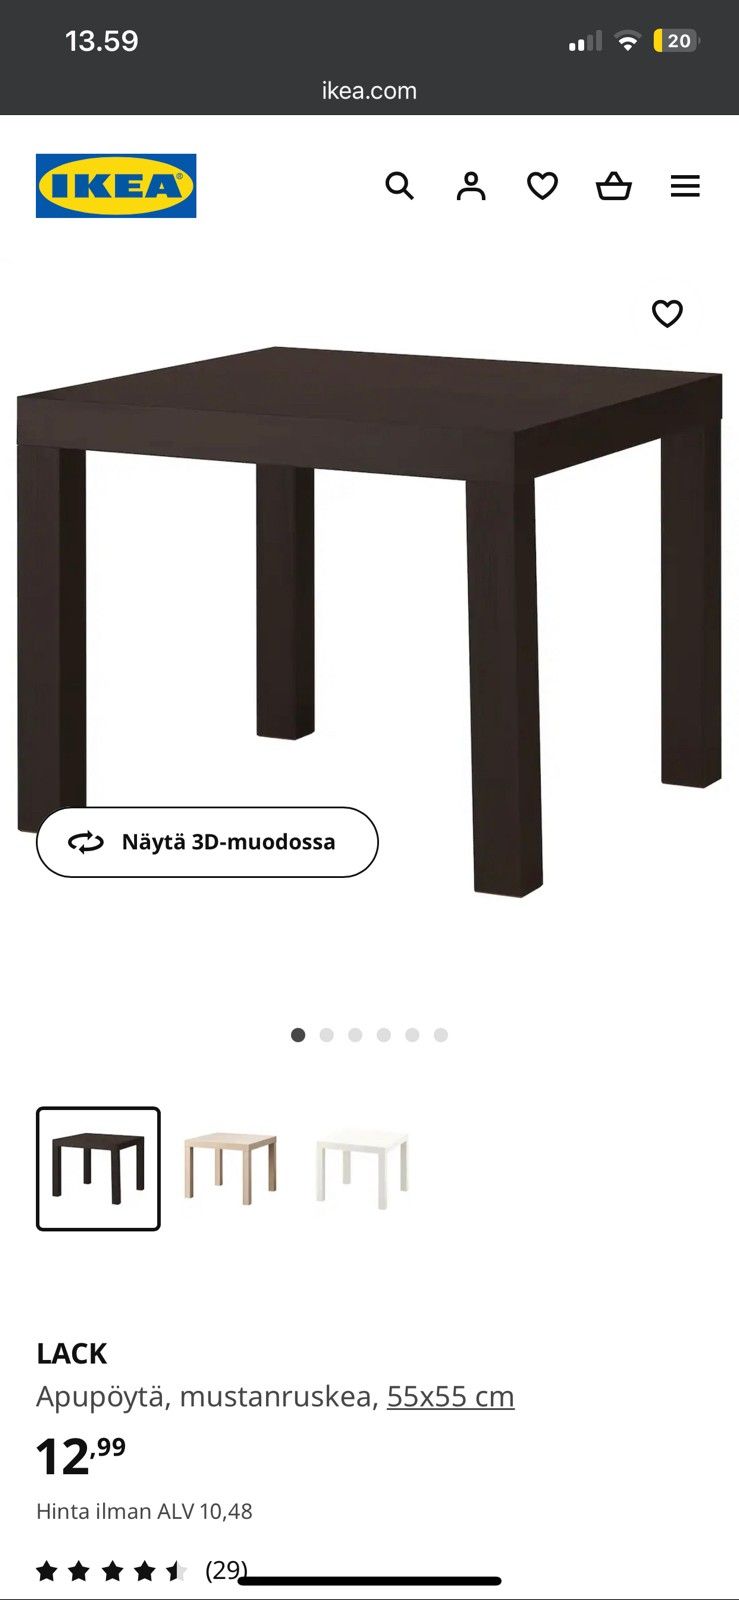 2kpl Ikean apupöytä/yöpöytä